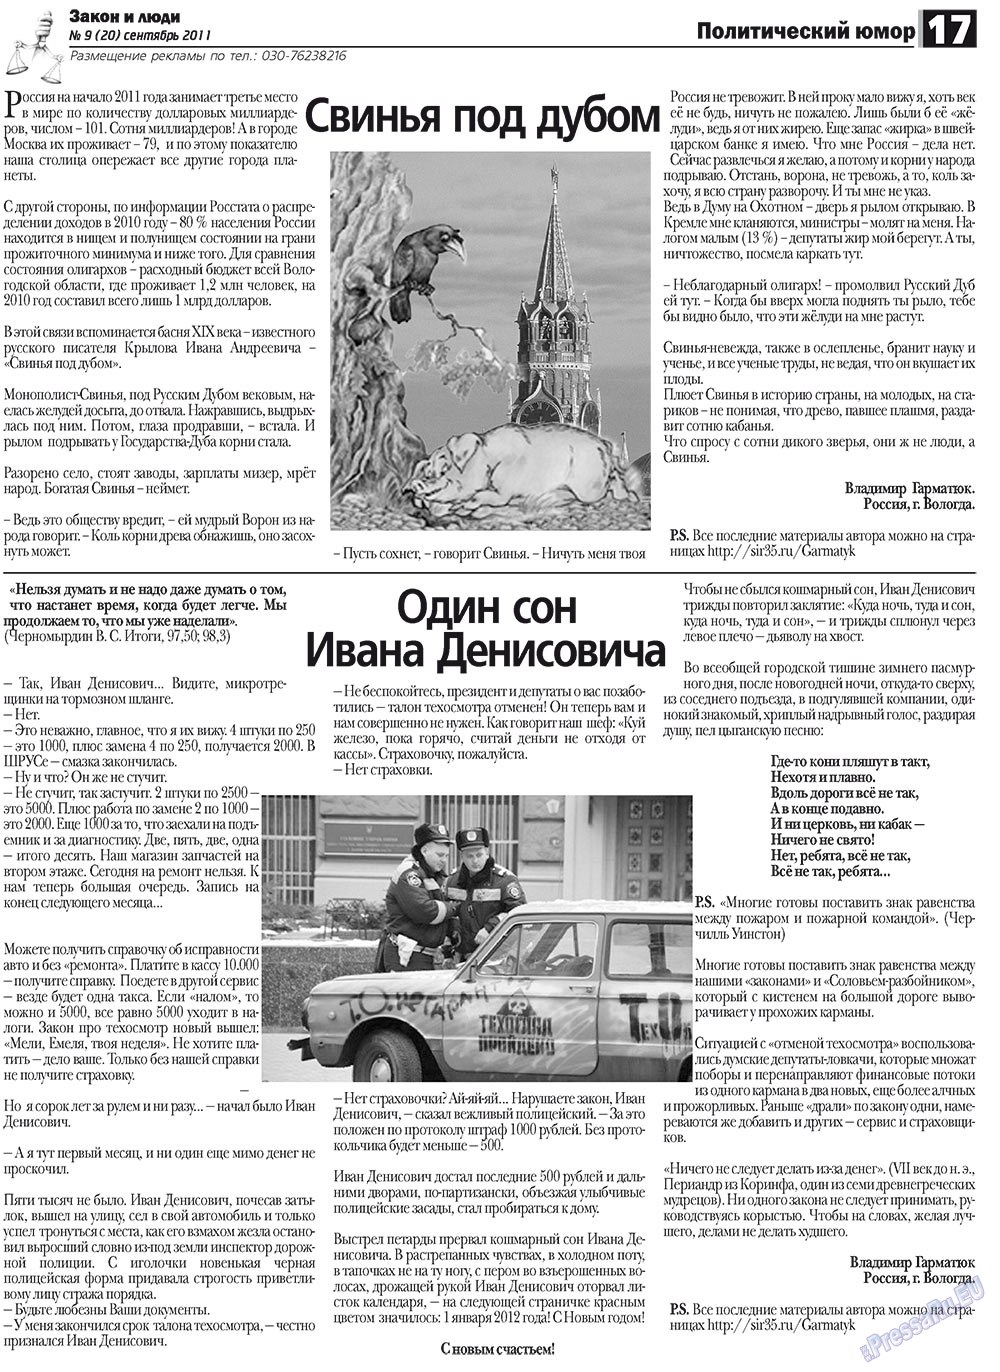 Закон и люди (газета). 2011 год, номер 9, стр. 17